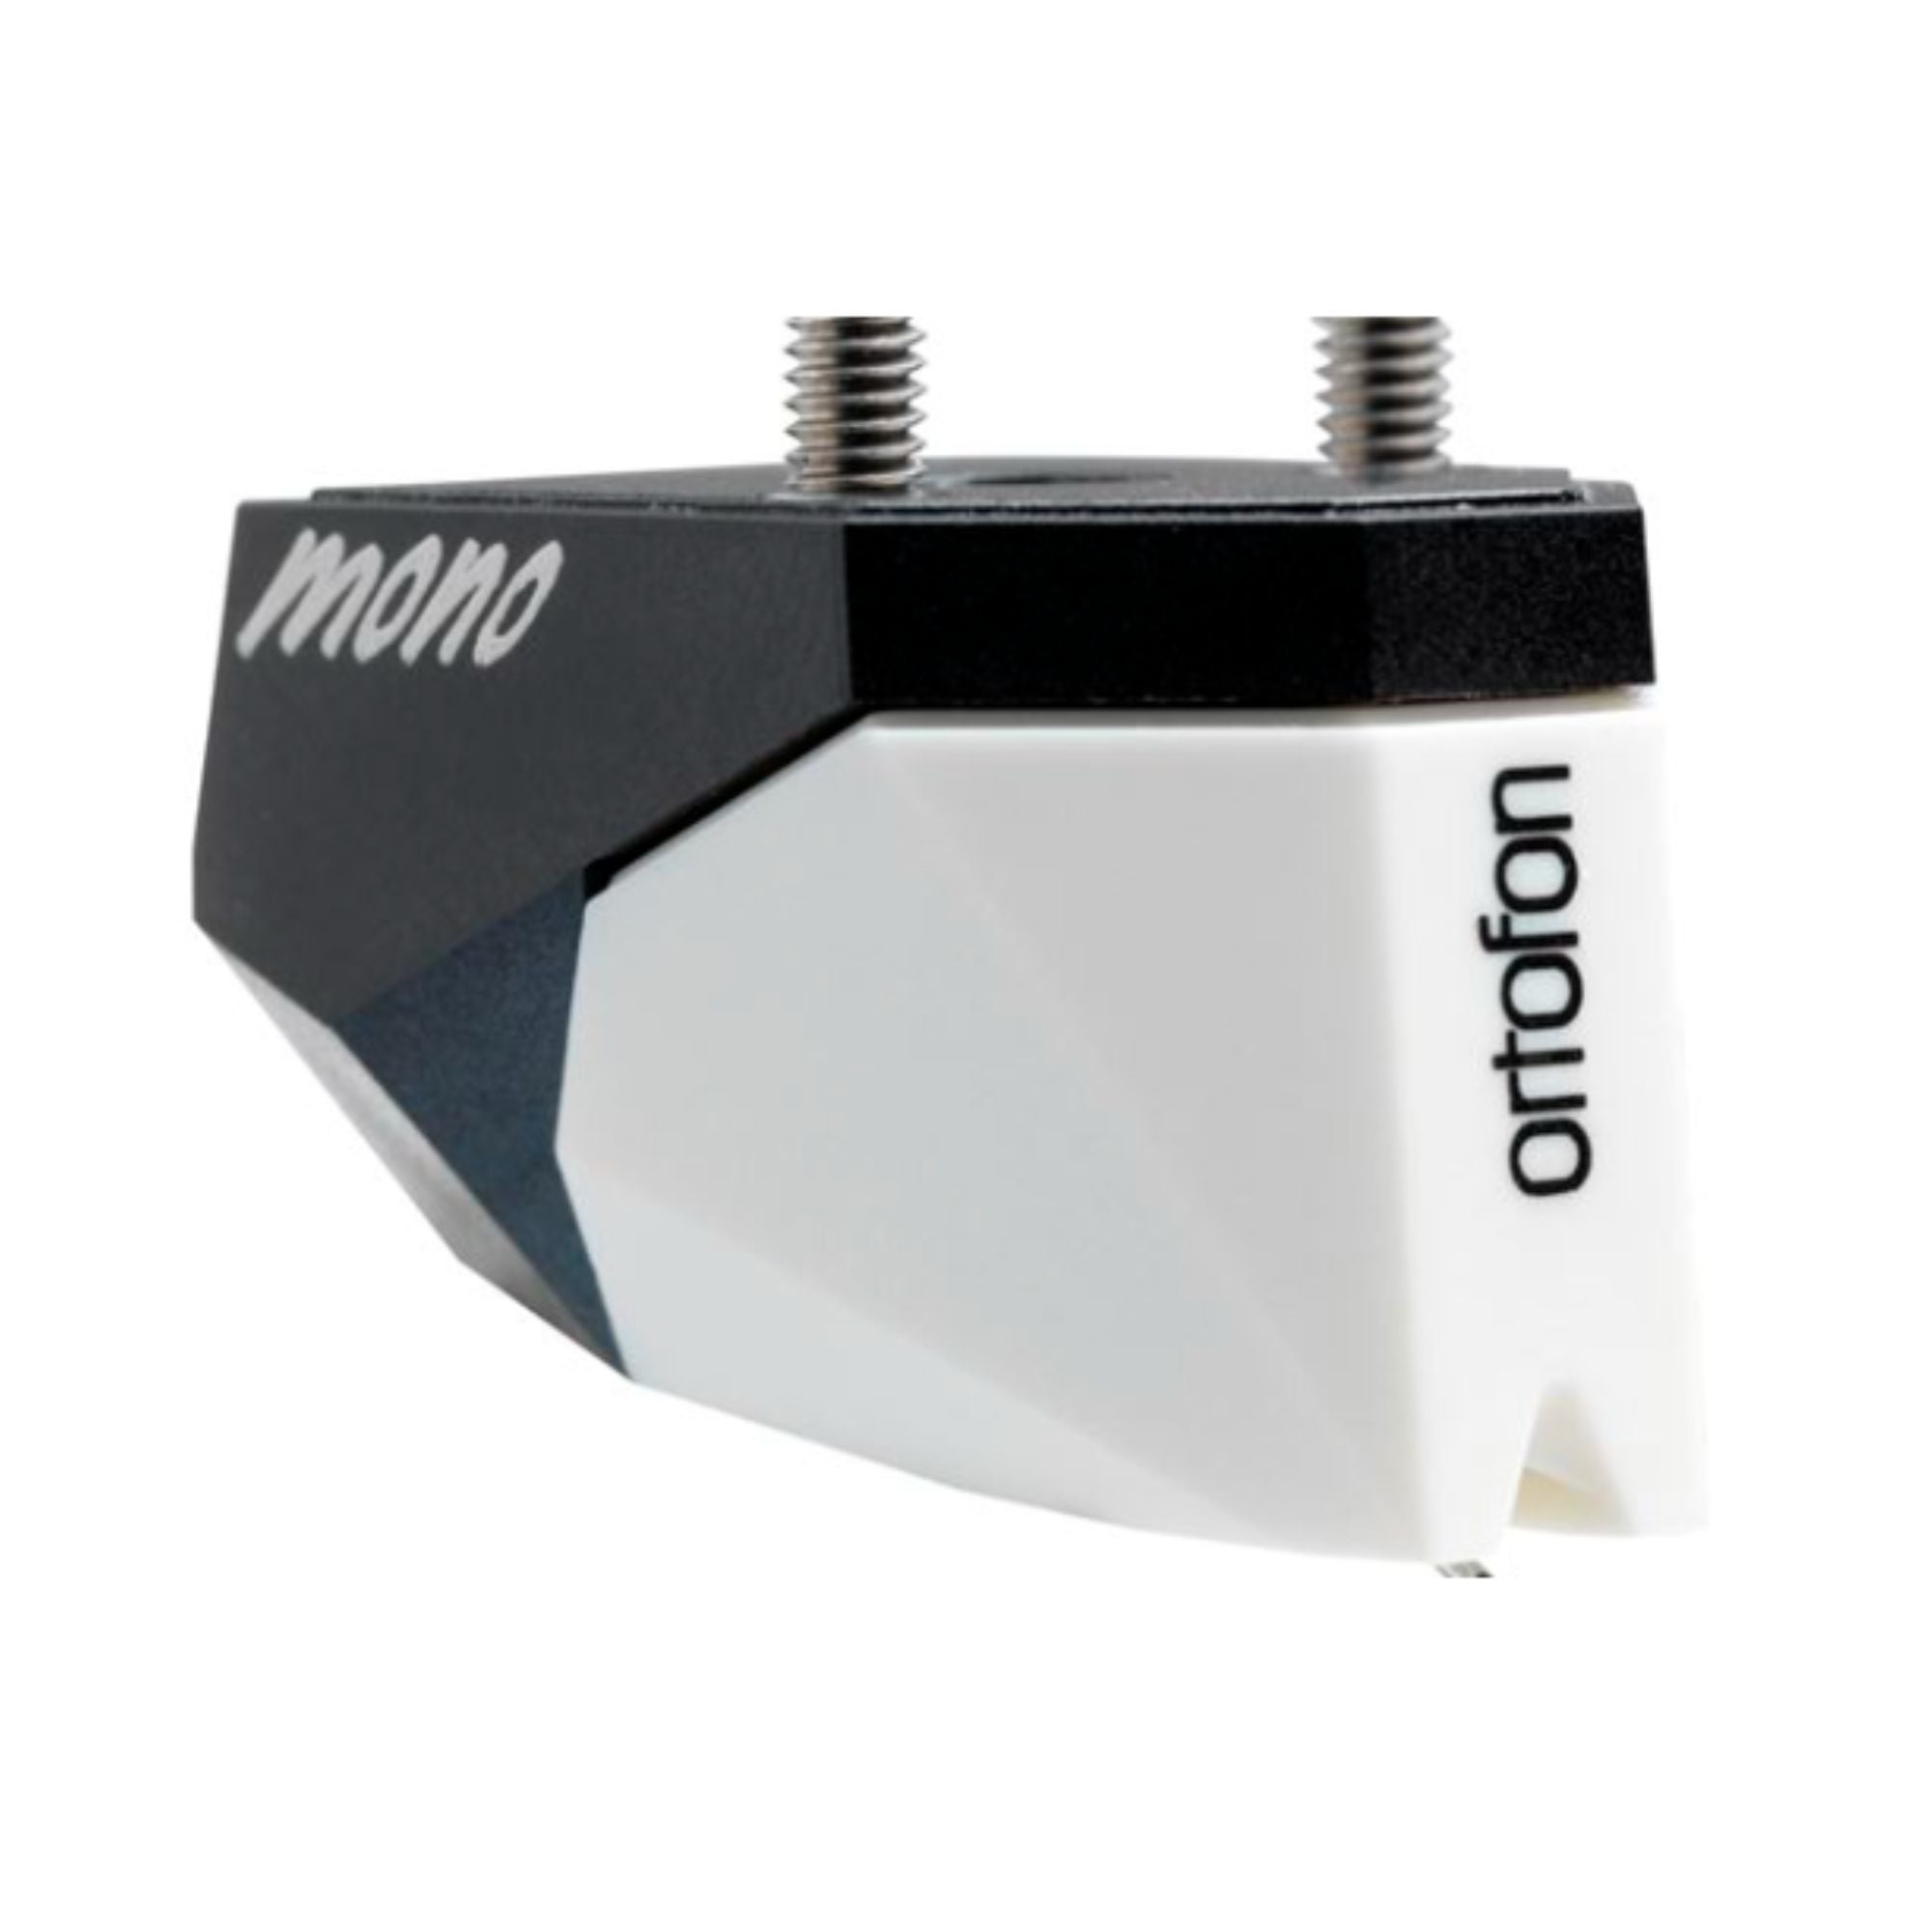 Ortofon 2M Mono Verso - Moving Magnet Cartridge, Ortofon, Turntable Accessories - AVStore.in